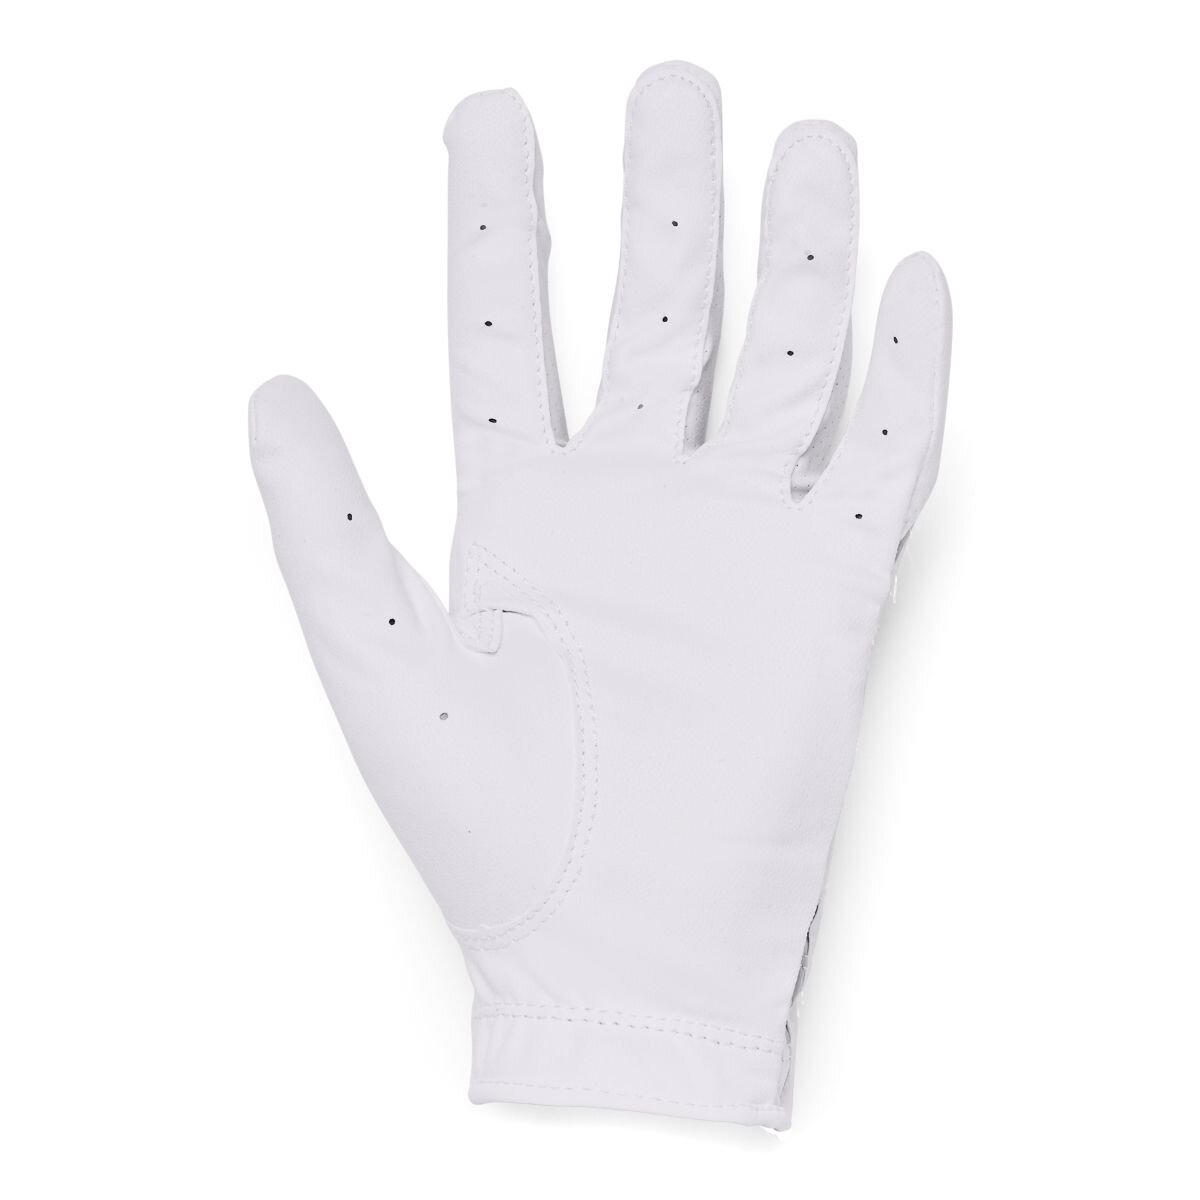 Under Armour Iso-Chill dìtské golfové rukavice White/Metallic Silver, velikost S, M, L - zvìtšit obrázek